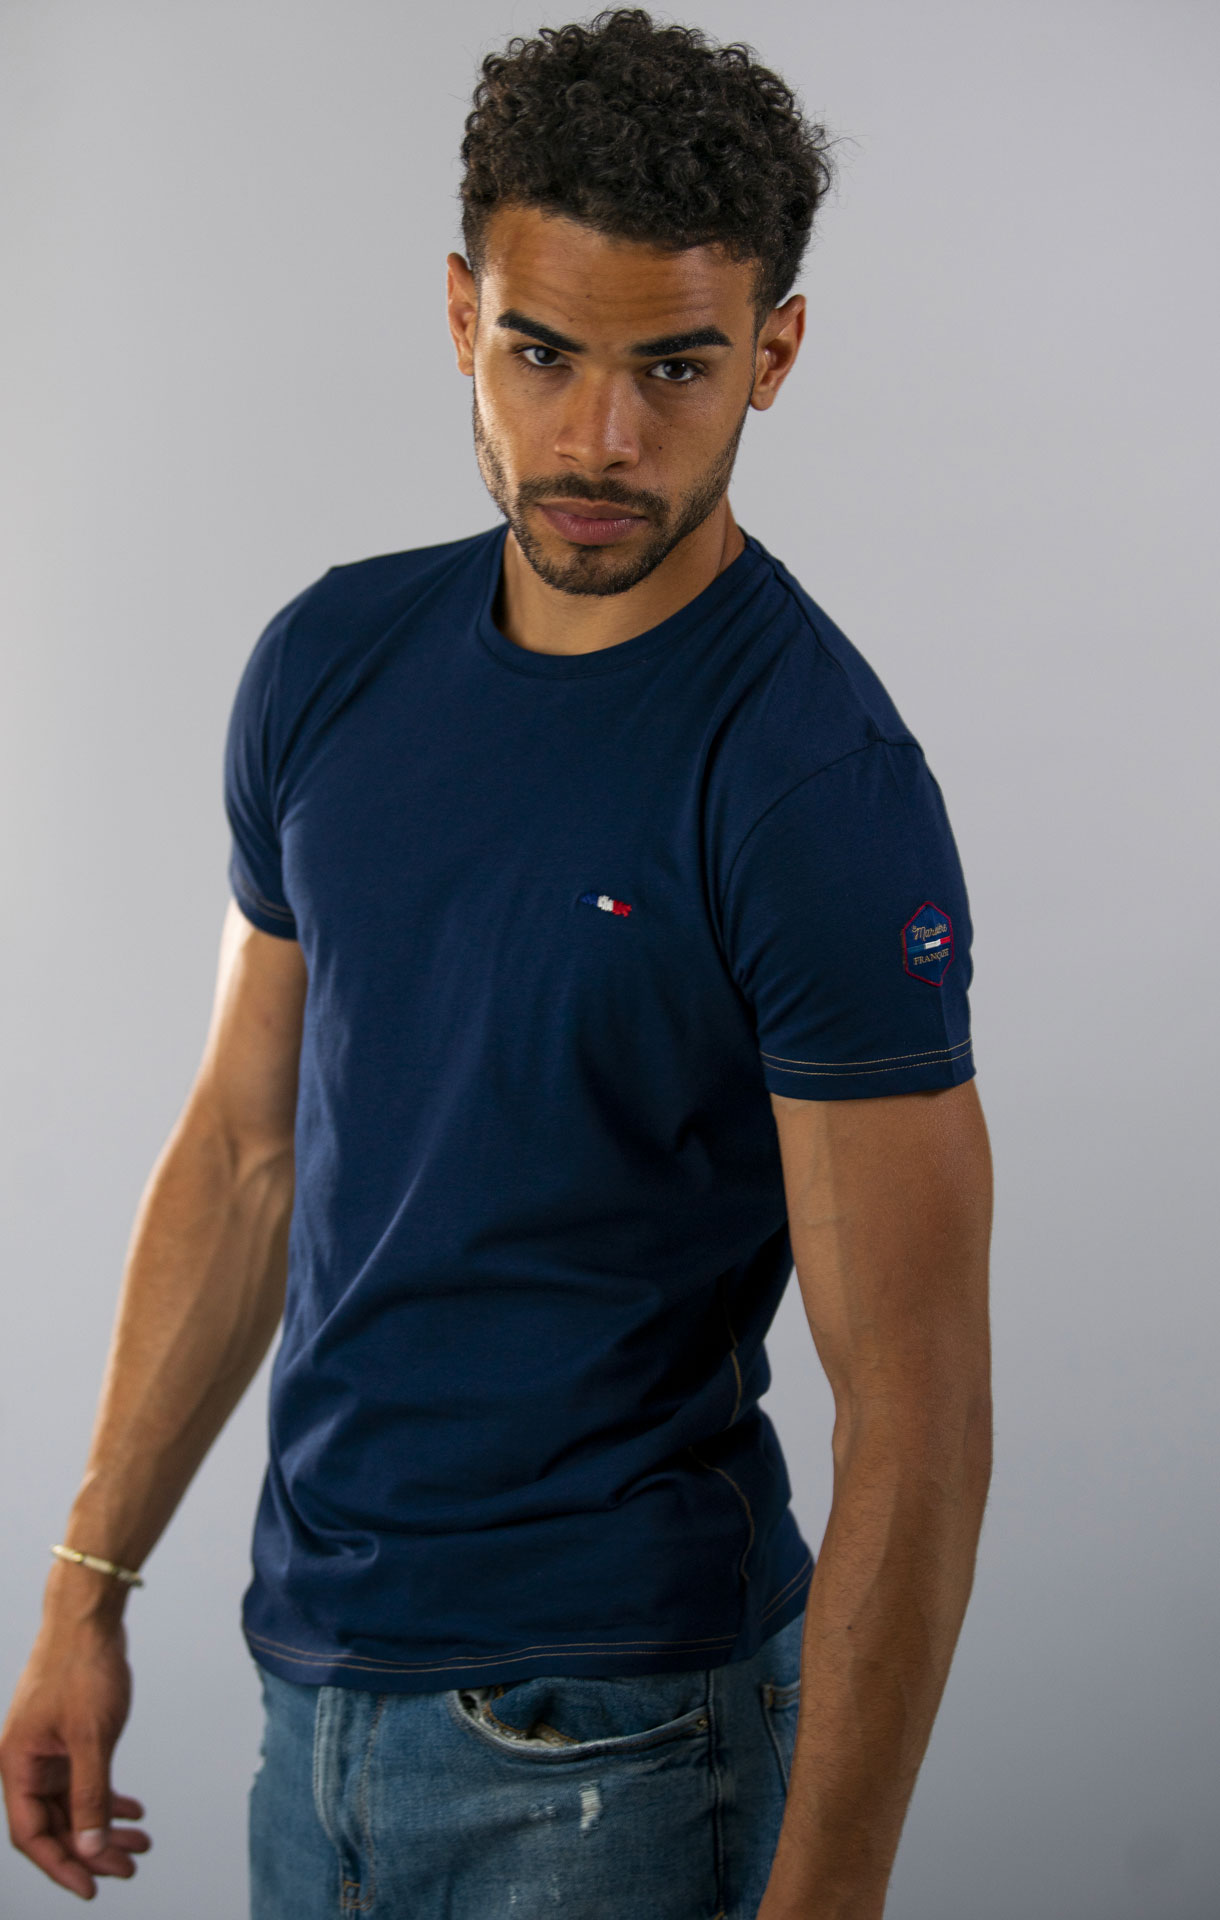 T-Shirt manches courtes homme TOBIAS BLANC – La Marinière Française